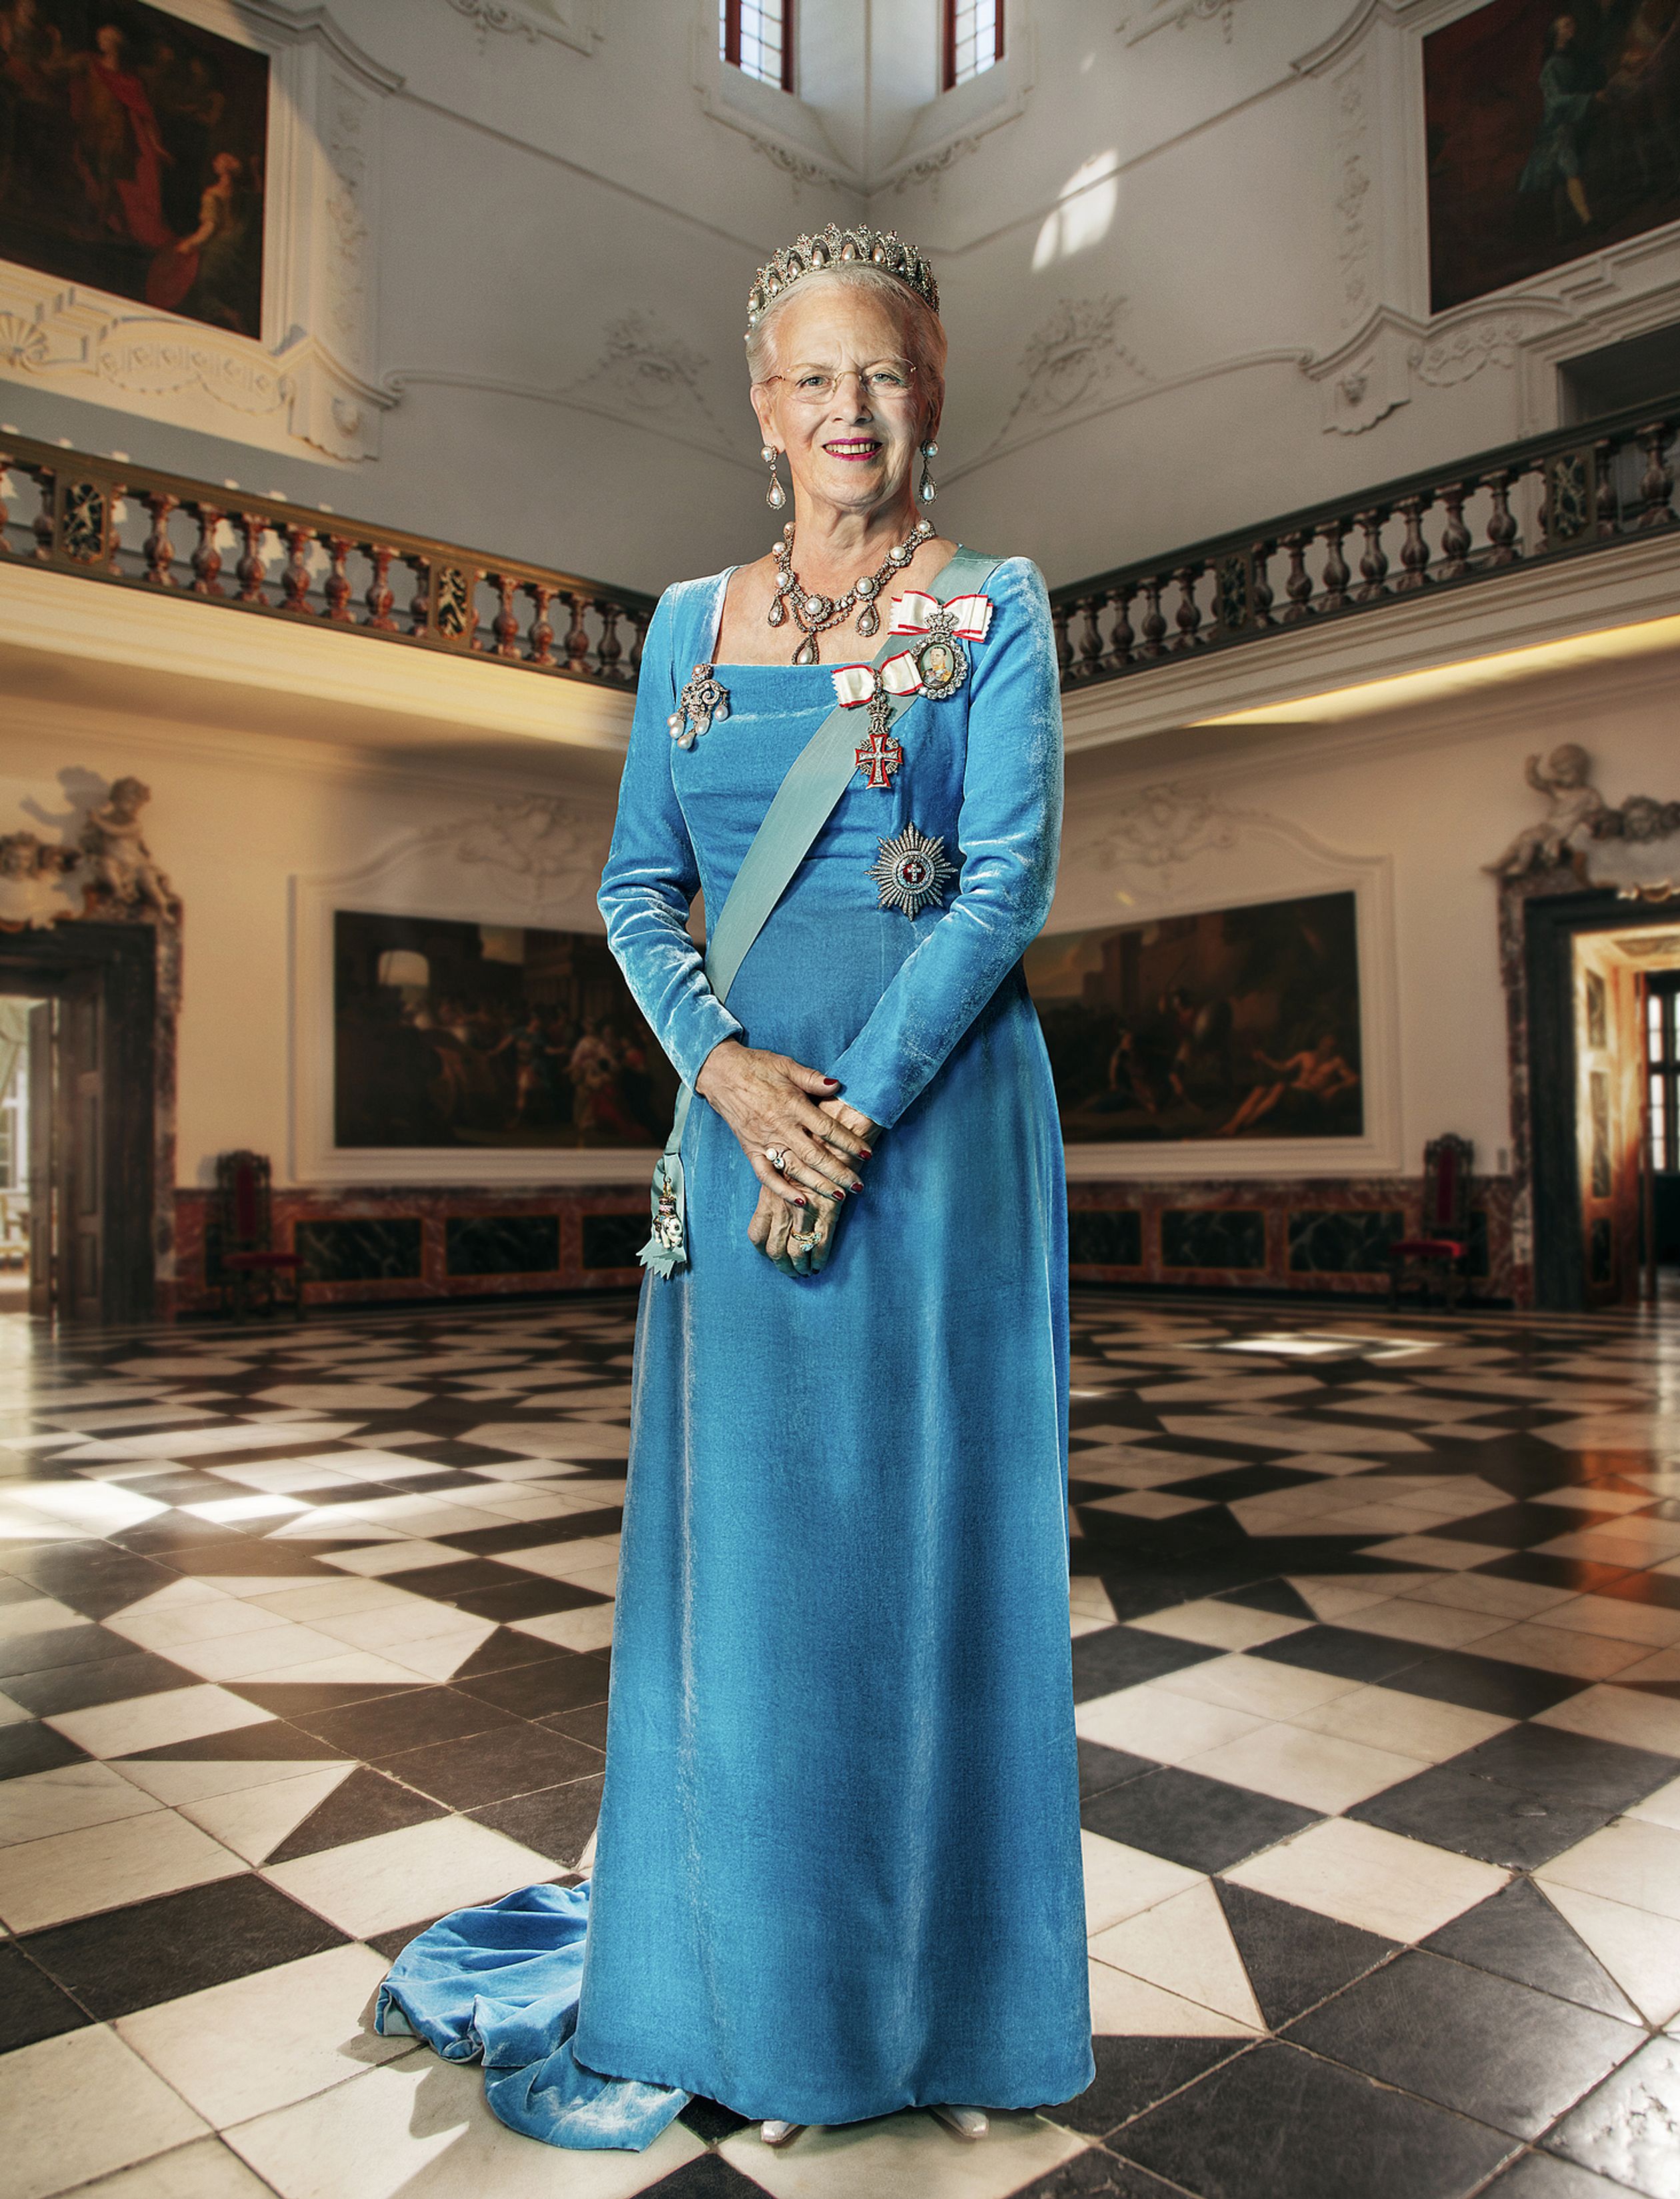 Koningin_Margrethe_van_Denemarken_2020.jpg